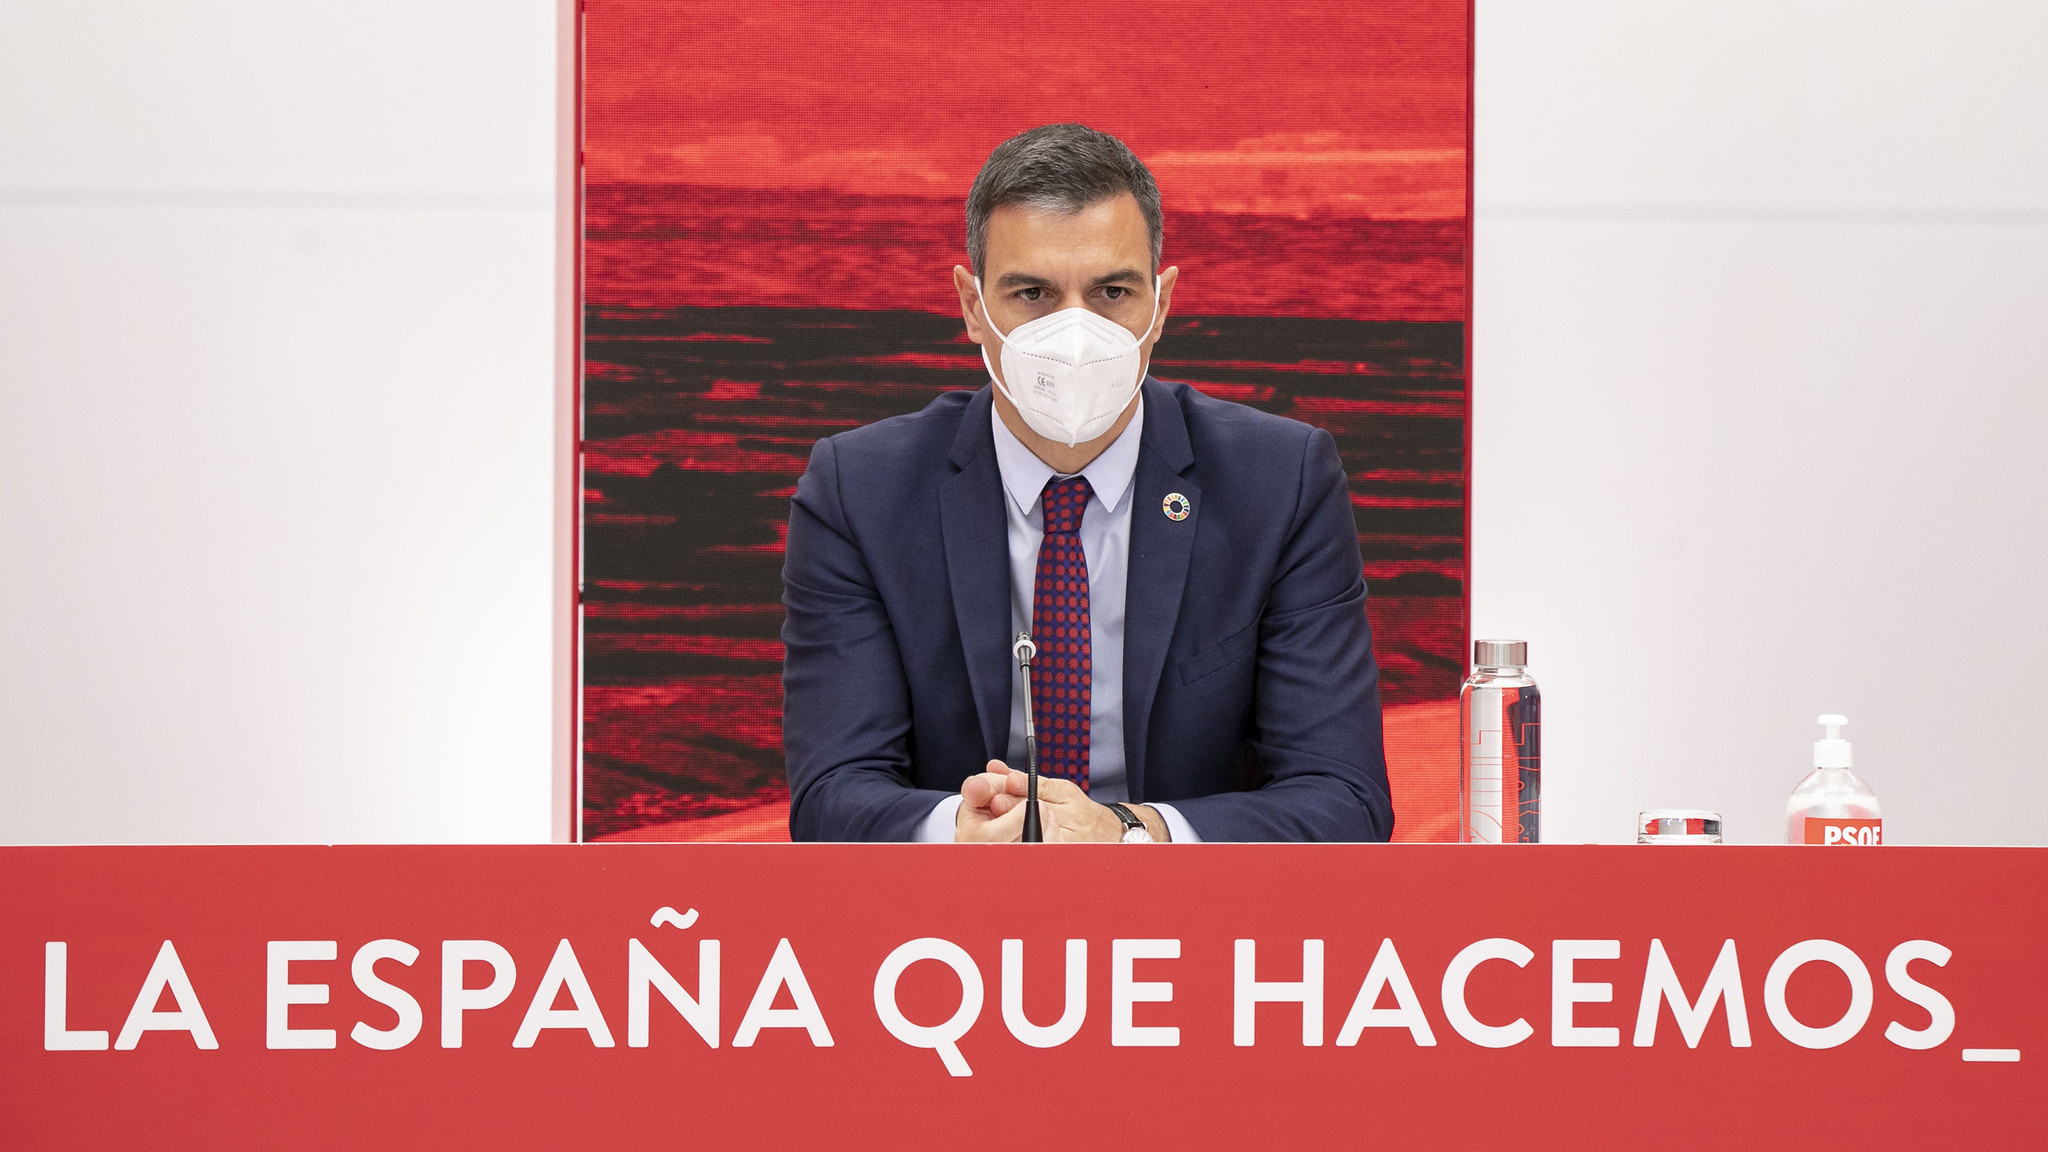 Los barones del PSOE guardan silencio a la espera de "gestos reales" del separatismo